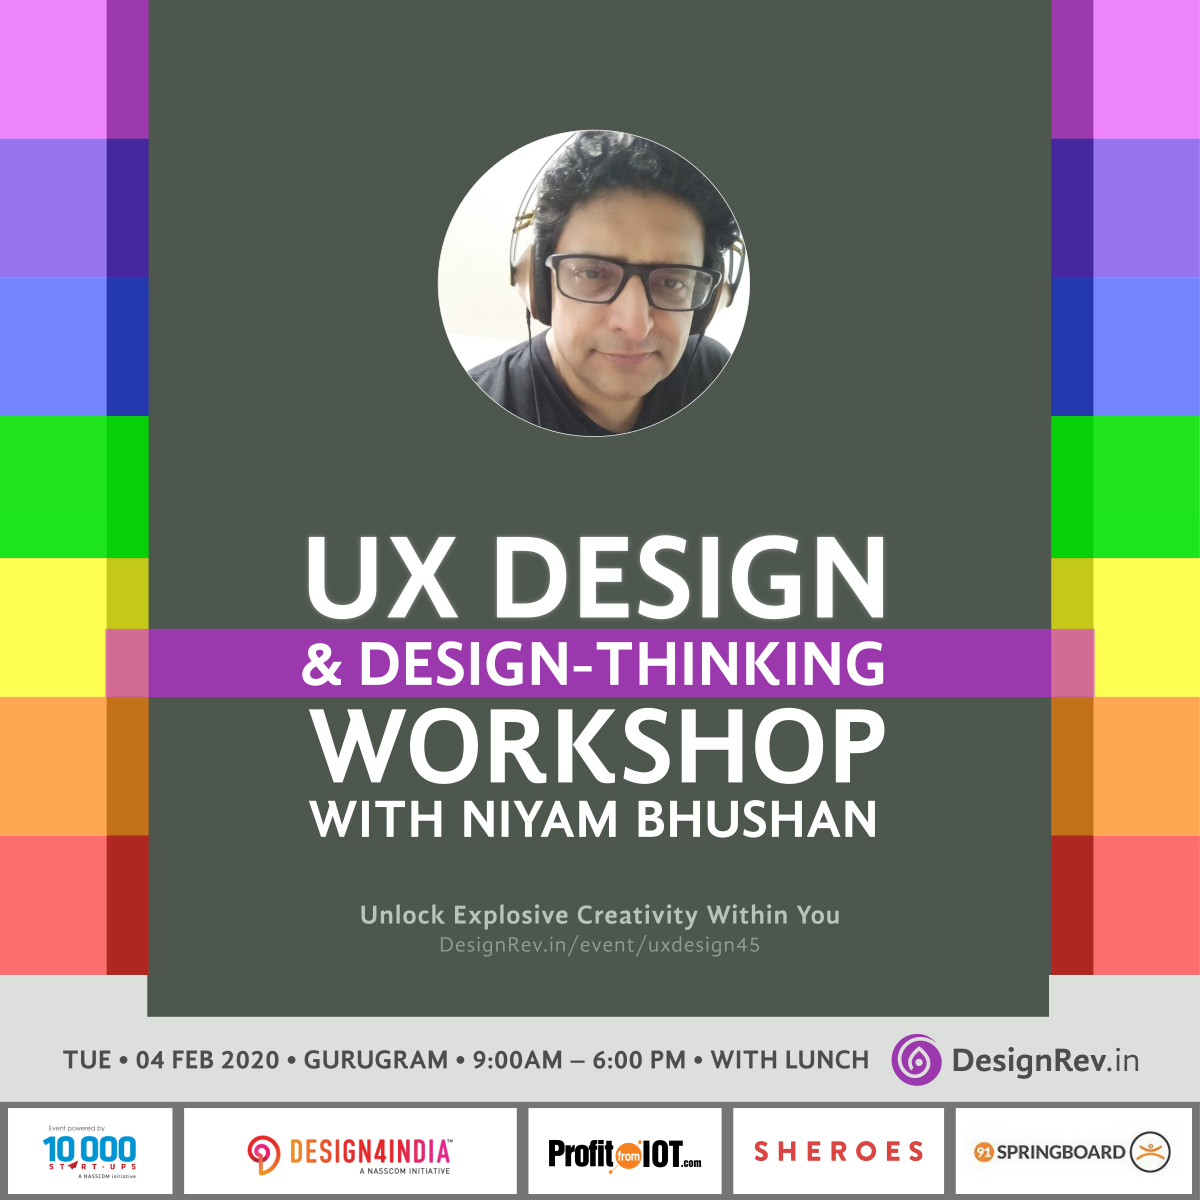 UX Design and DesignThinking Workshop with Niyam Bhushan, 04 Feb 2020, Gurugram